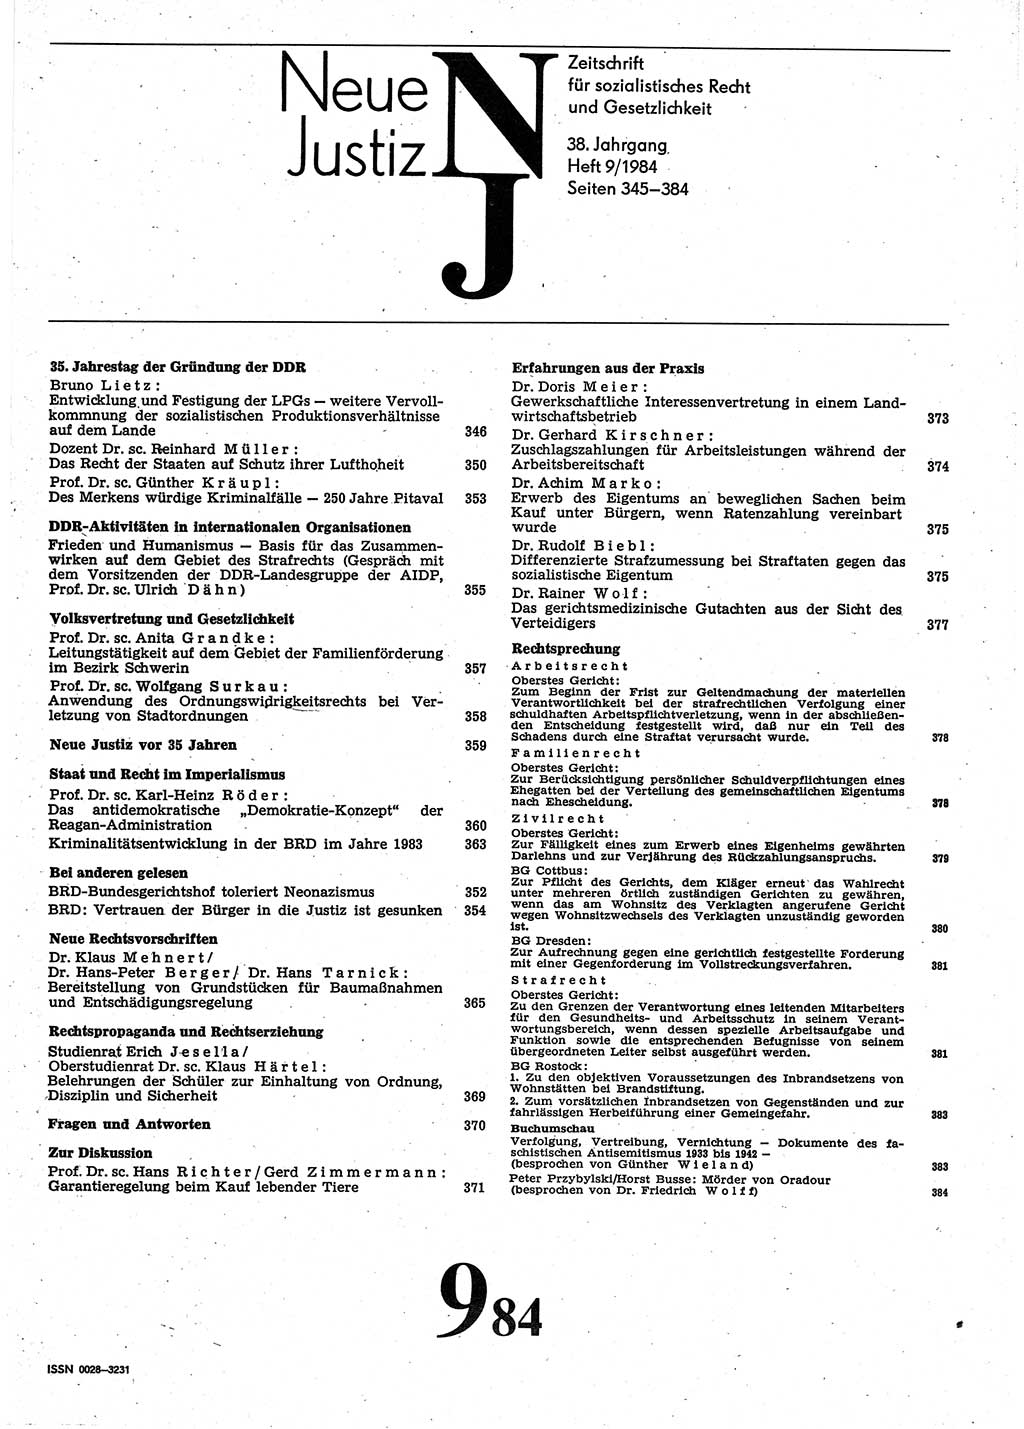 Neue Justiz (NJ), Zeitschrift für sozialistisches Recht und Gesetzlichkeit [Deutsche Demokratische Republik (DDR)], 38. Jahrgang 1984, Seite 345 (NJ DDR 1984, S. 345)